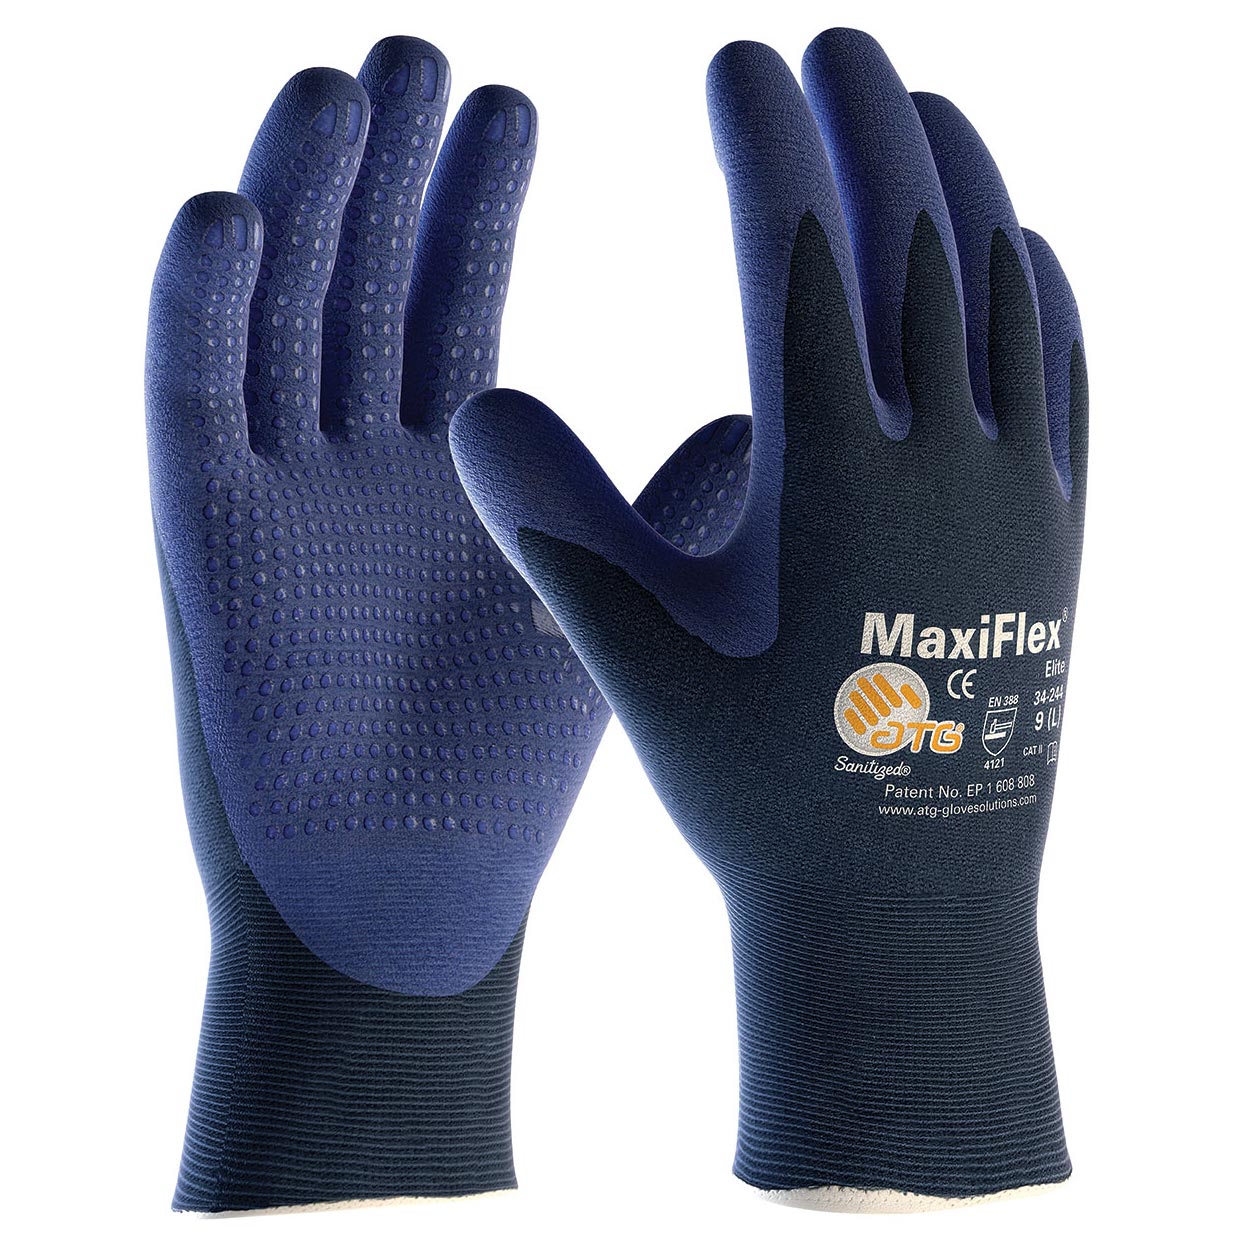 Glove Wonder Grip Double-Coated Nitrile Palm Gloves - Urban Garden Center